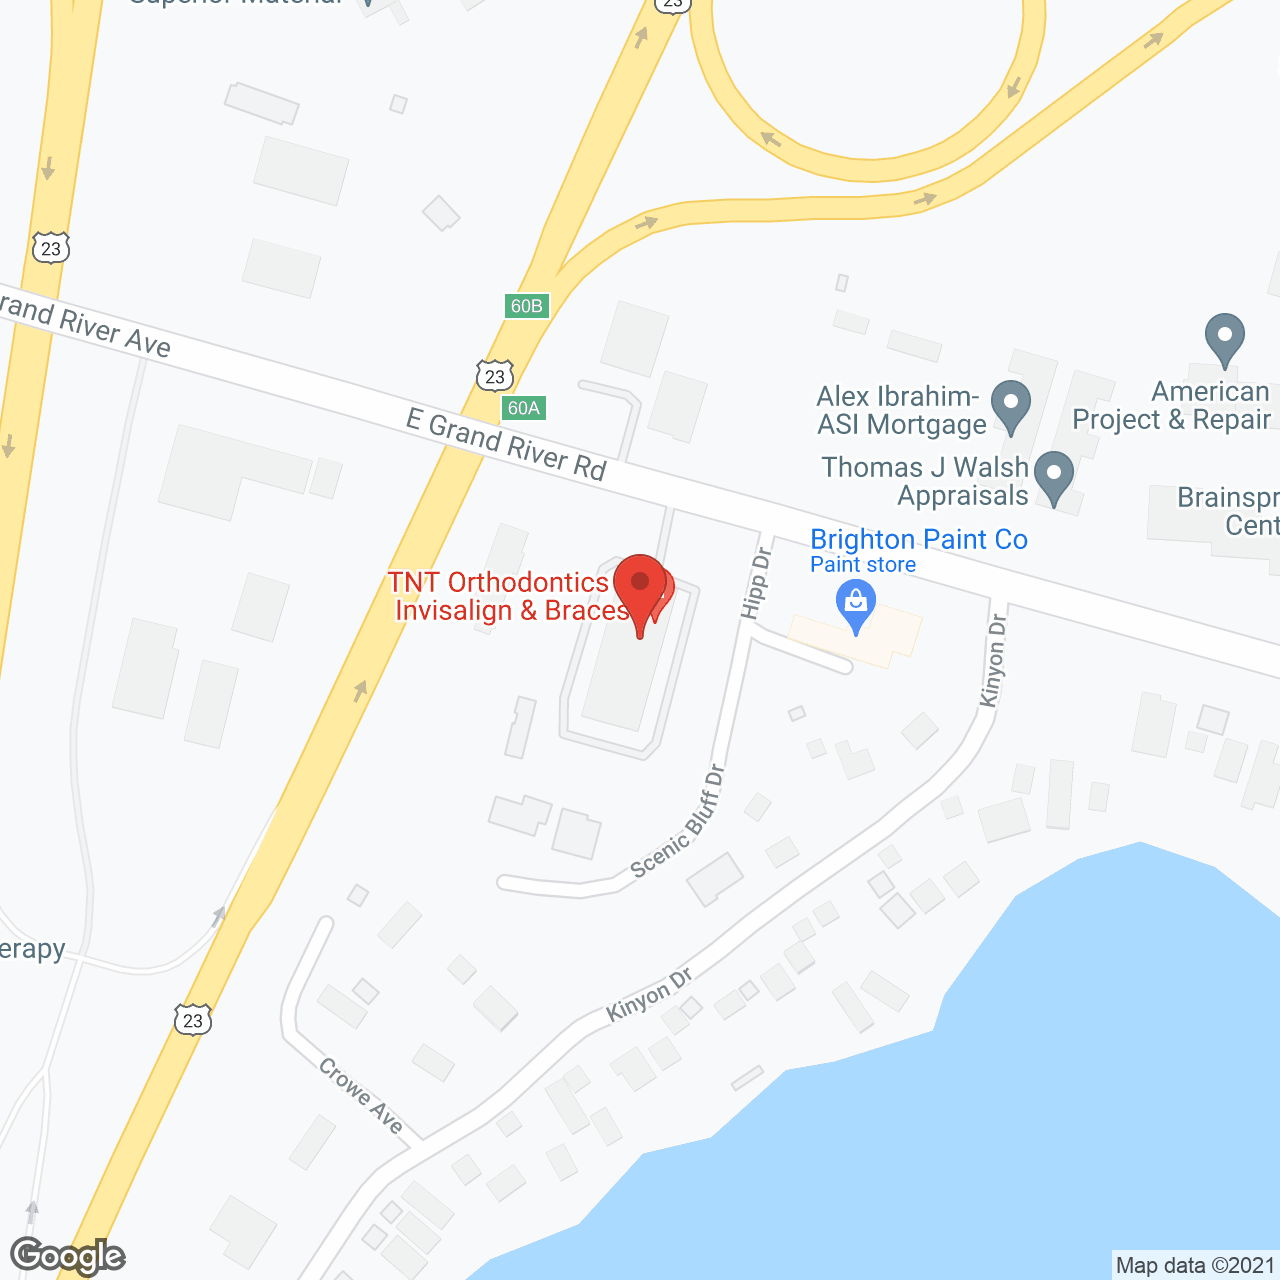 Centria Healthcare in google map